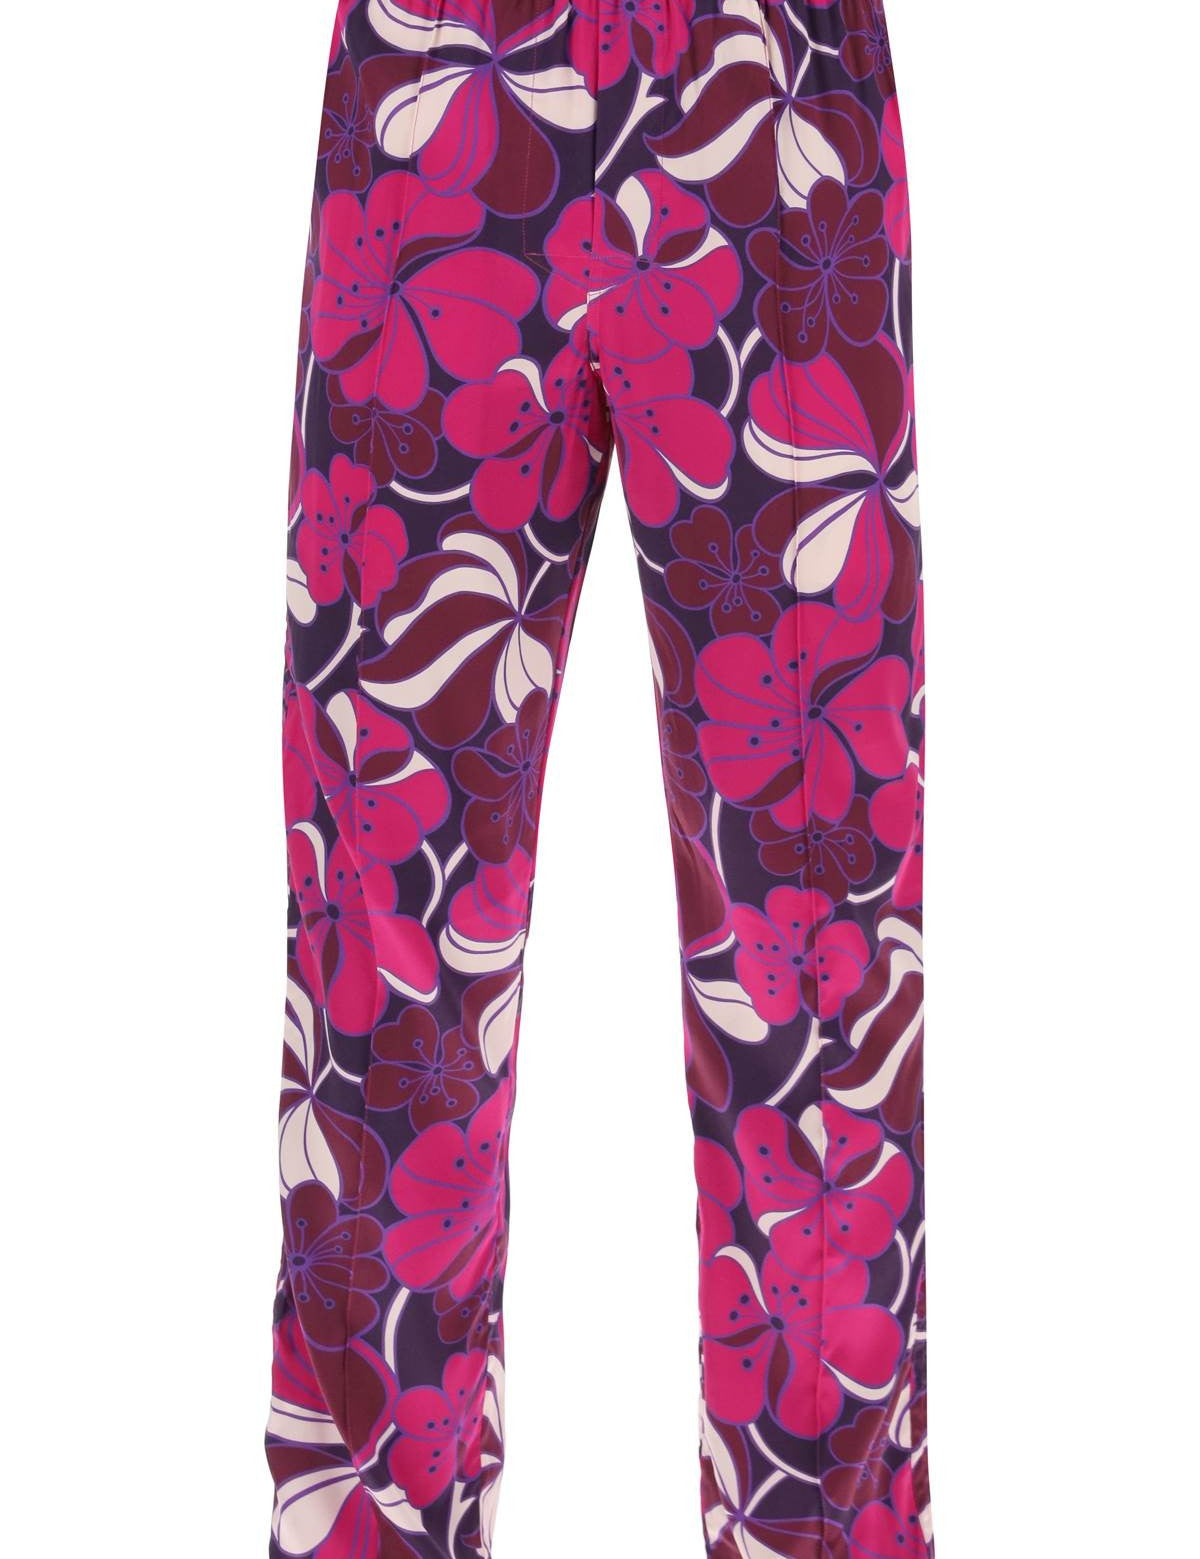 tom-ford-pajama-pants-in-floral-silk.jpg